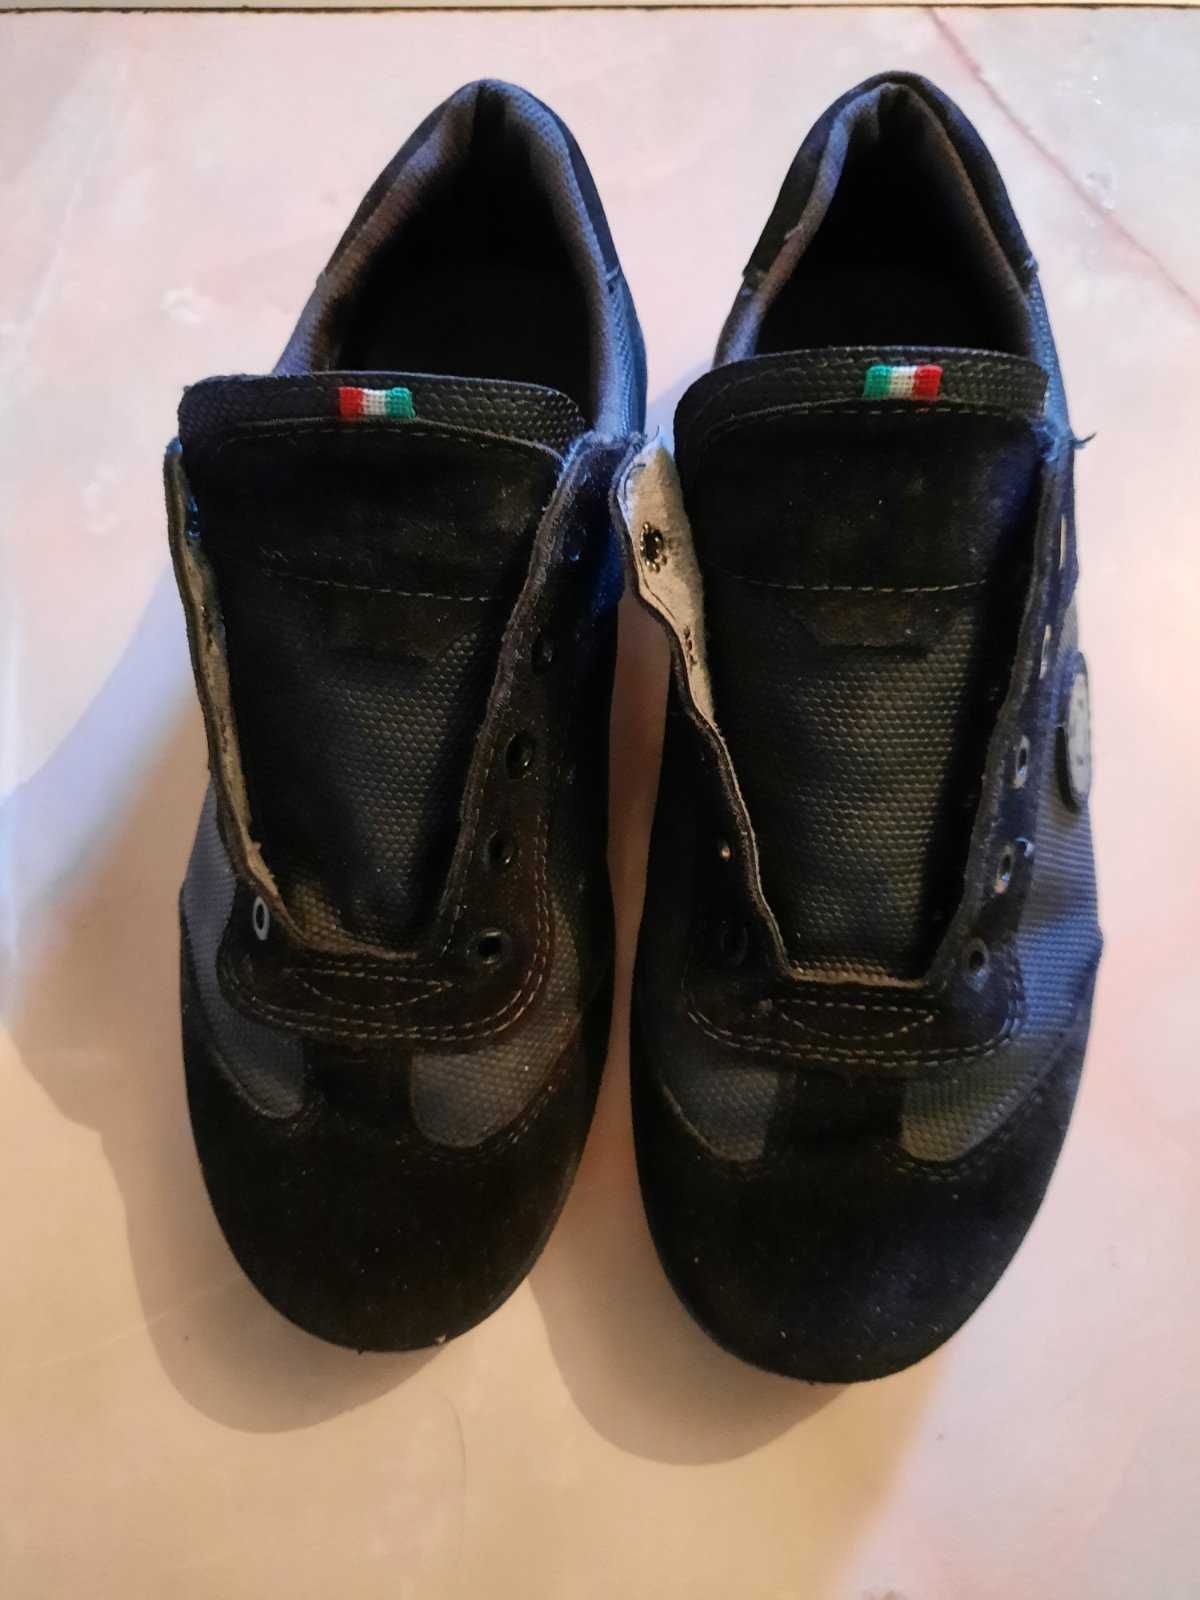 Продам кросівки Paola fashion Італія (розм. 40-41)